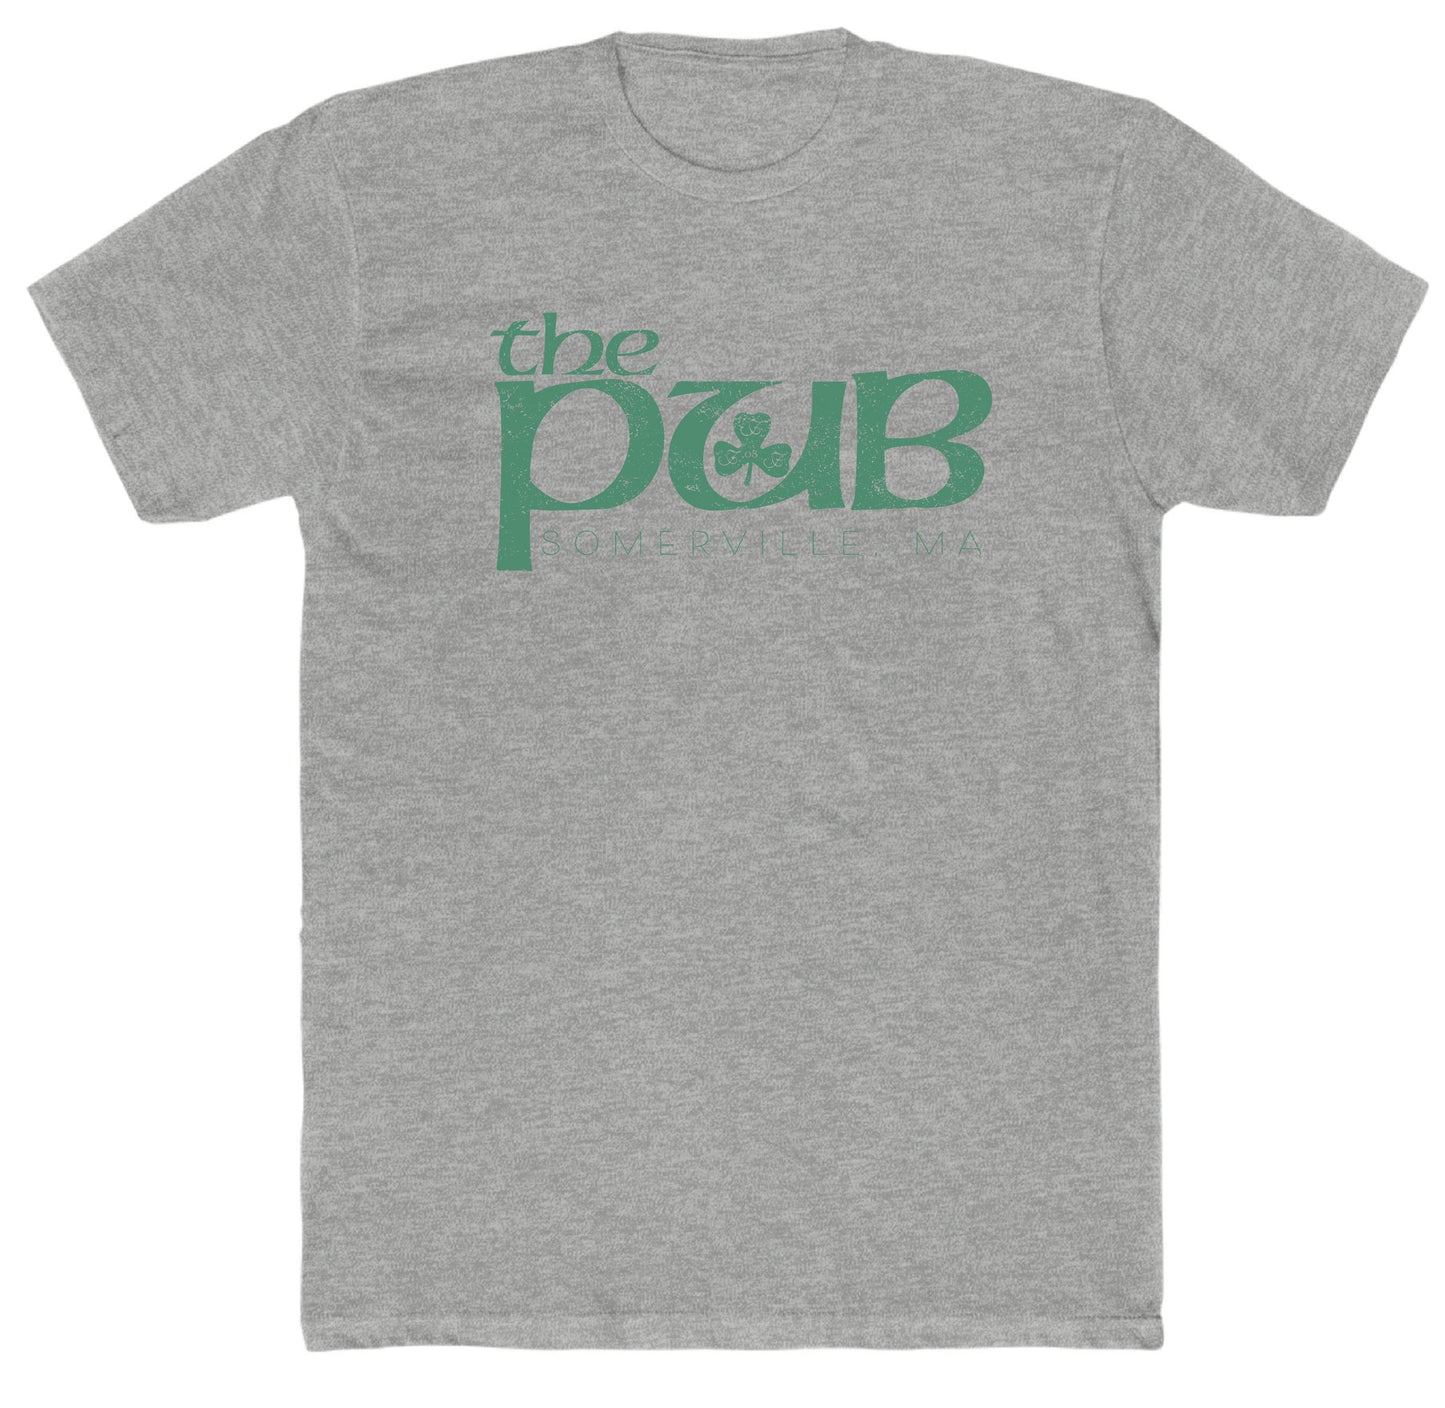 The Pub - Big Pub Unisex Cotton T-Shirt